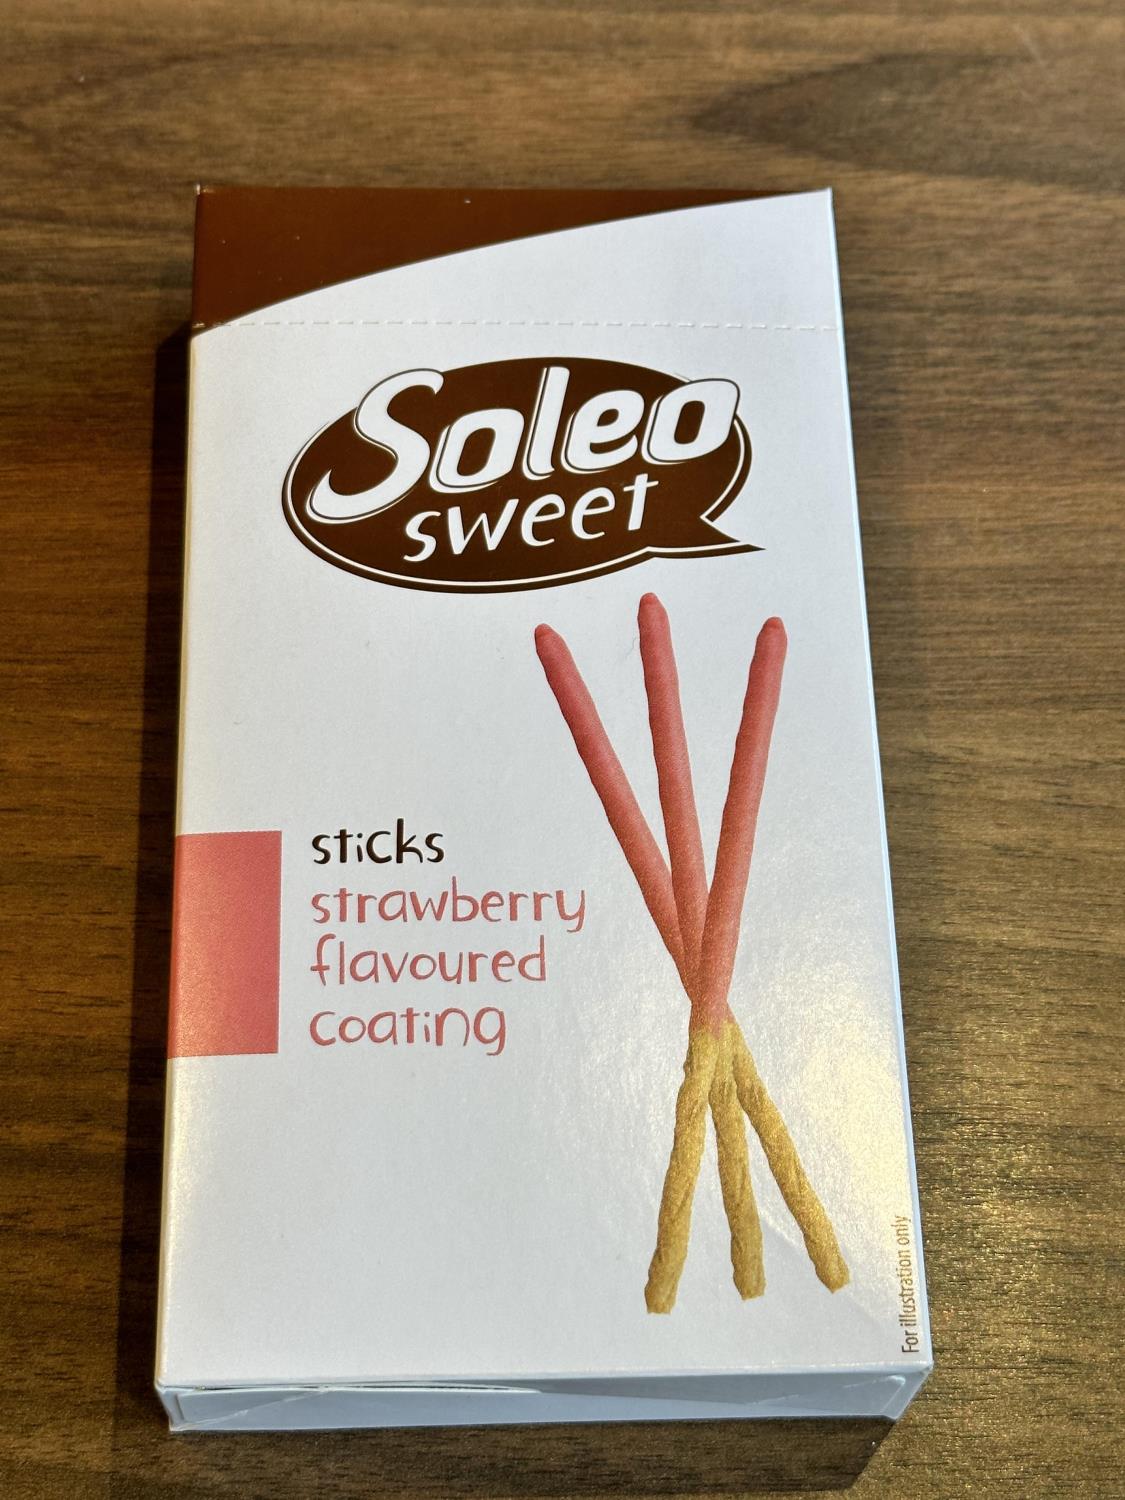 Soleo sweet strawberry